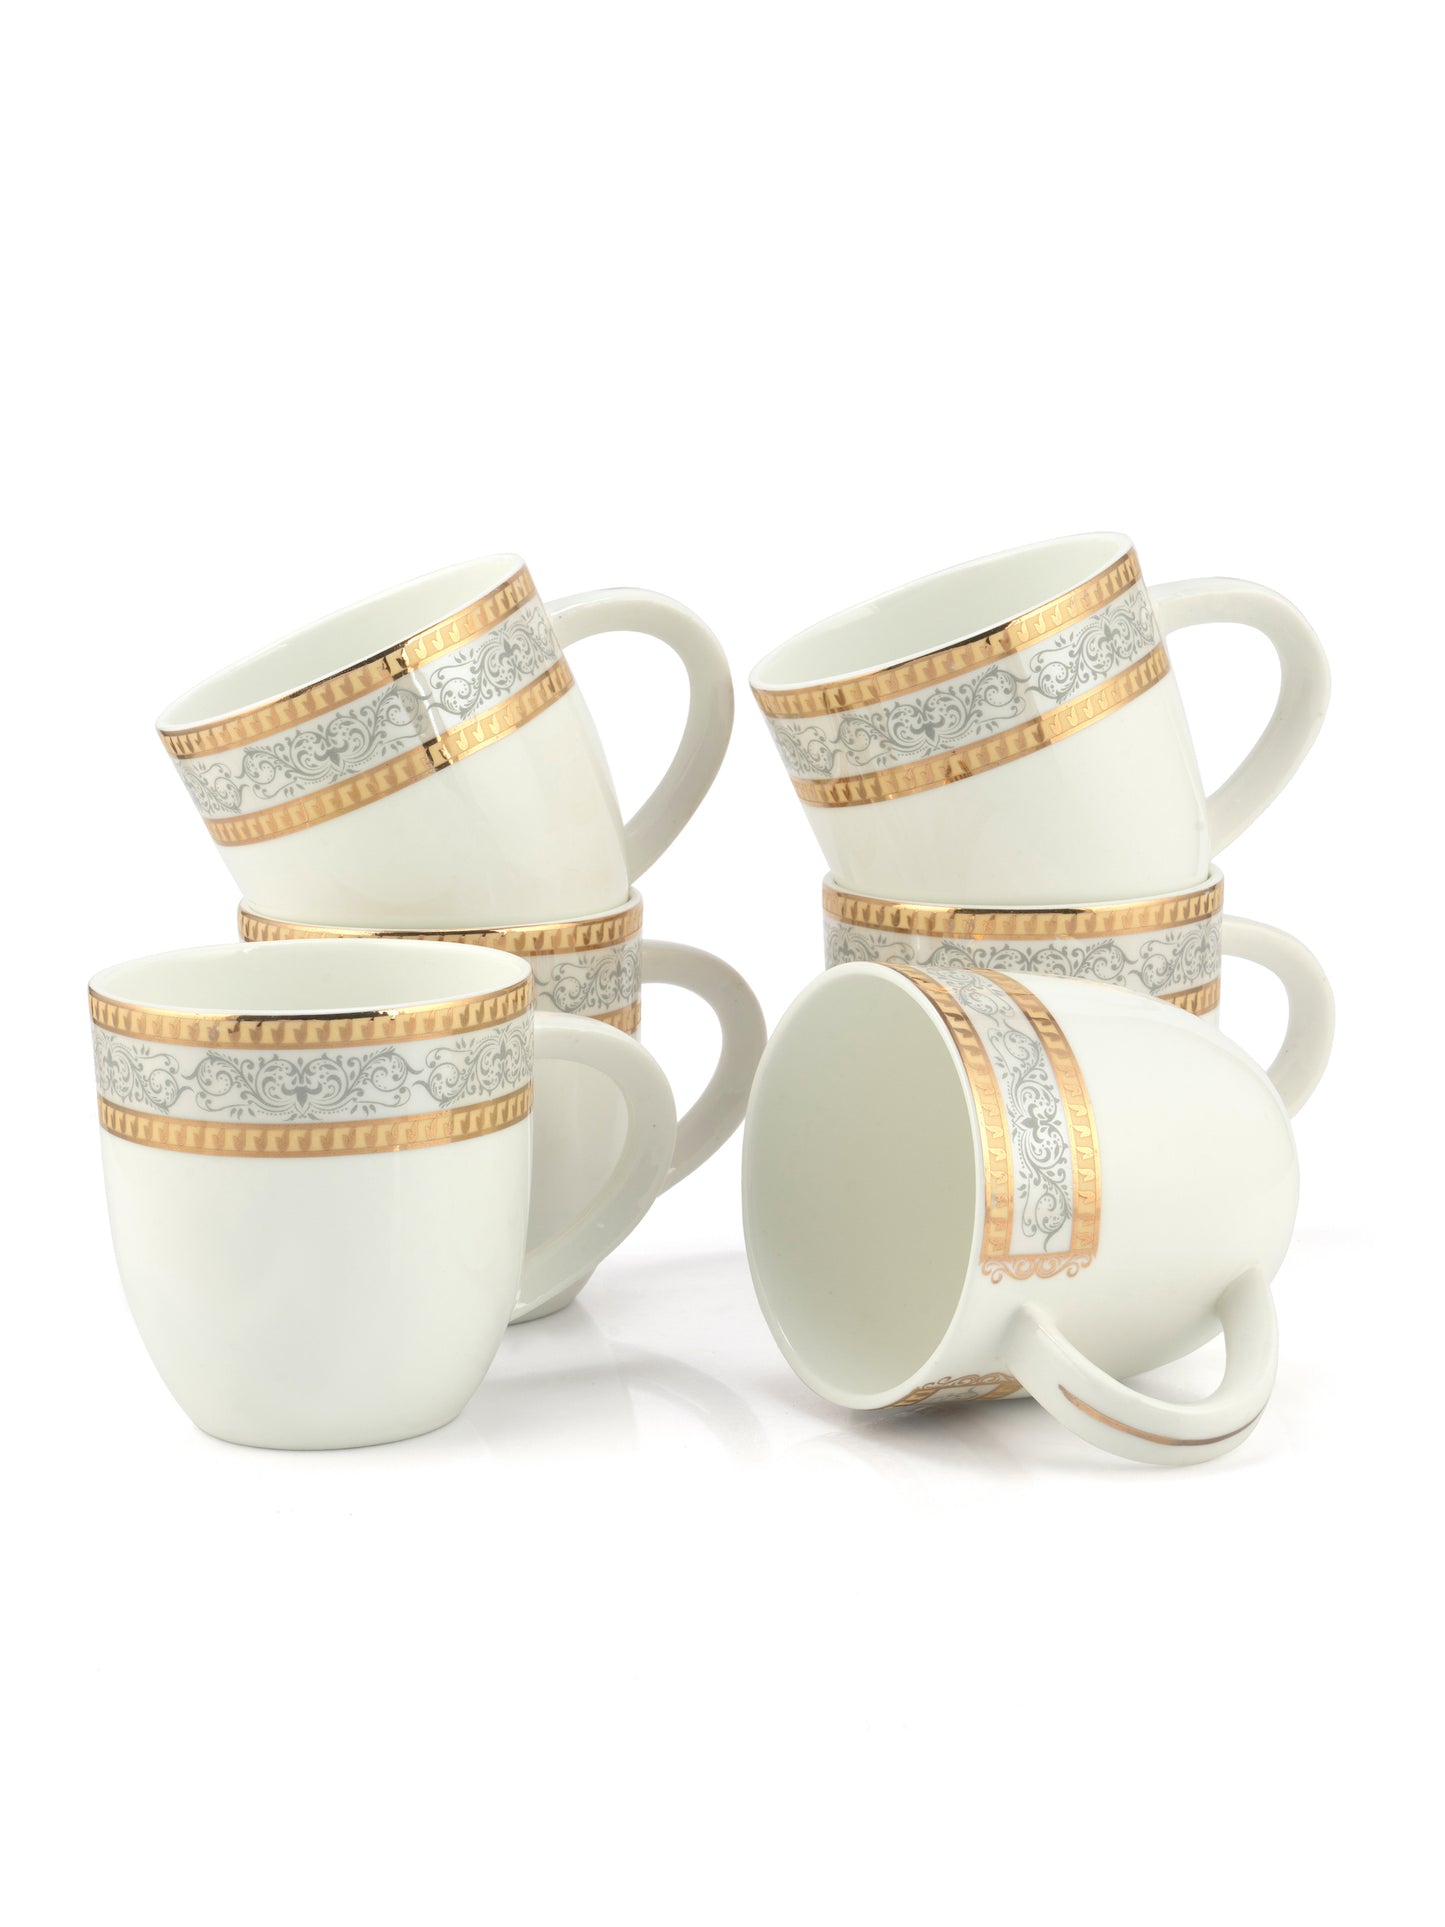 JCPL Aroma Skylight Coffee Mug/ Tea Cup, 210ml, Set of 6, Meraki (AS9)